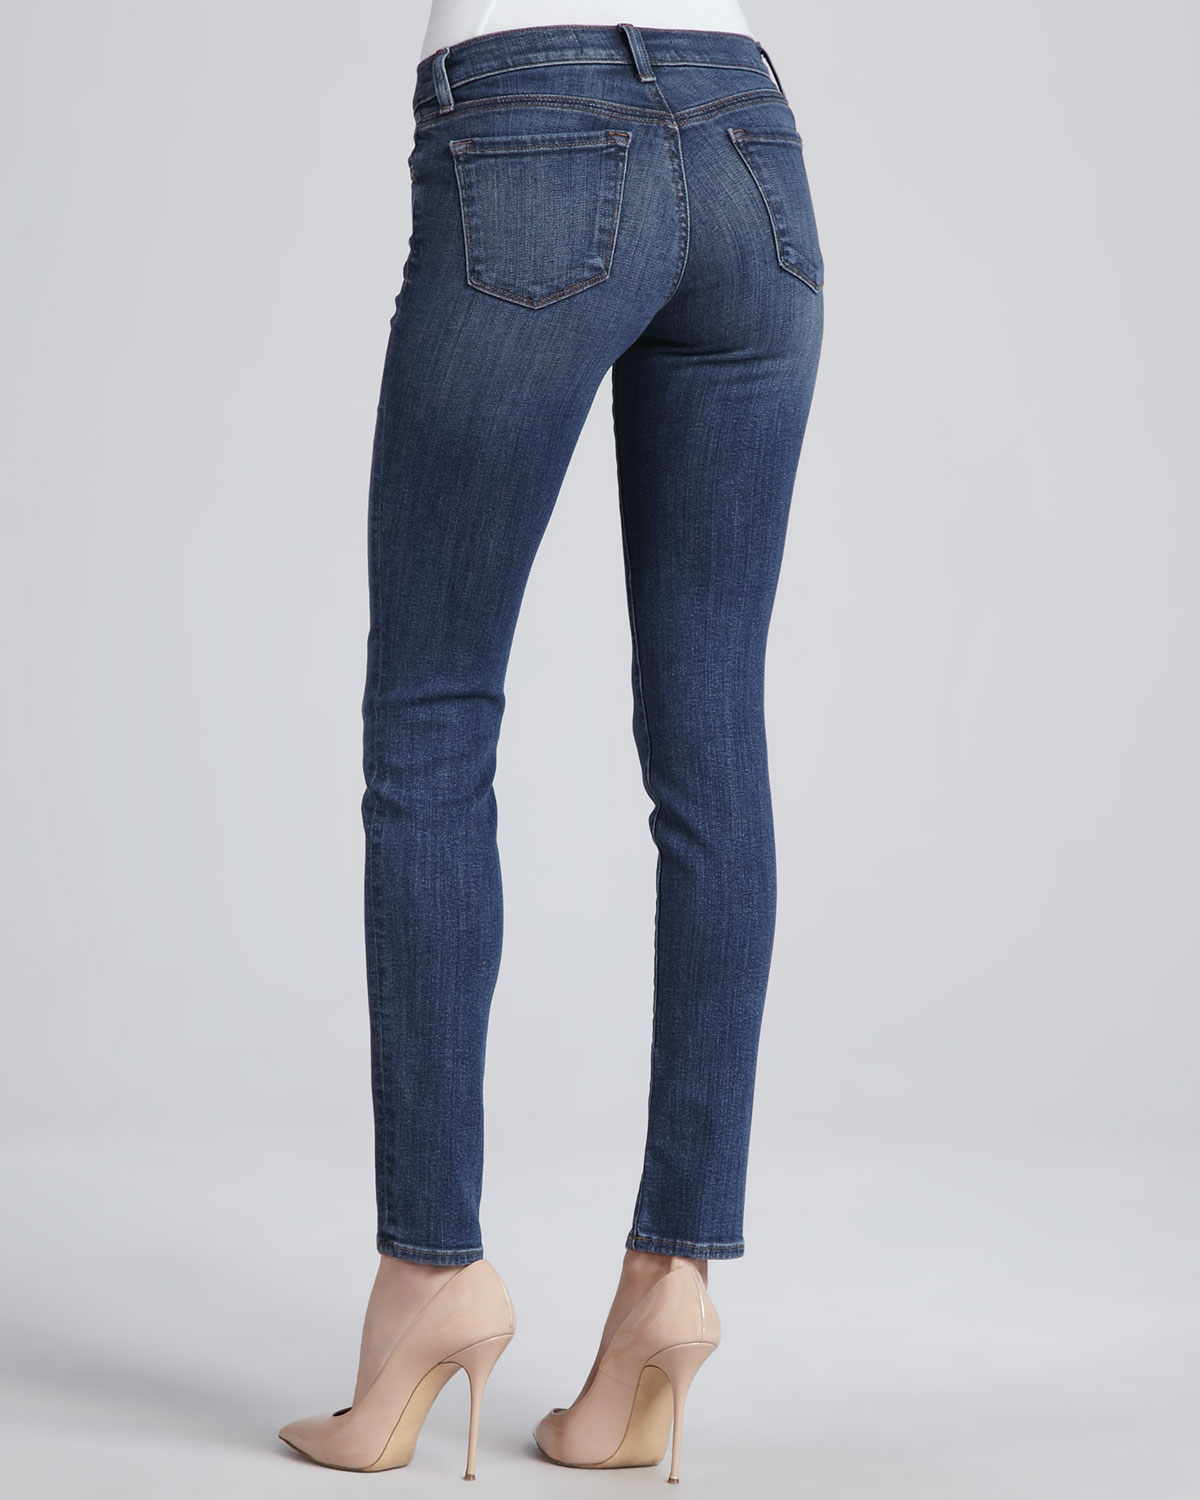 refuge brand jeans